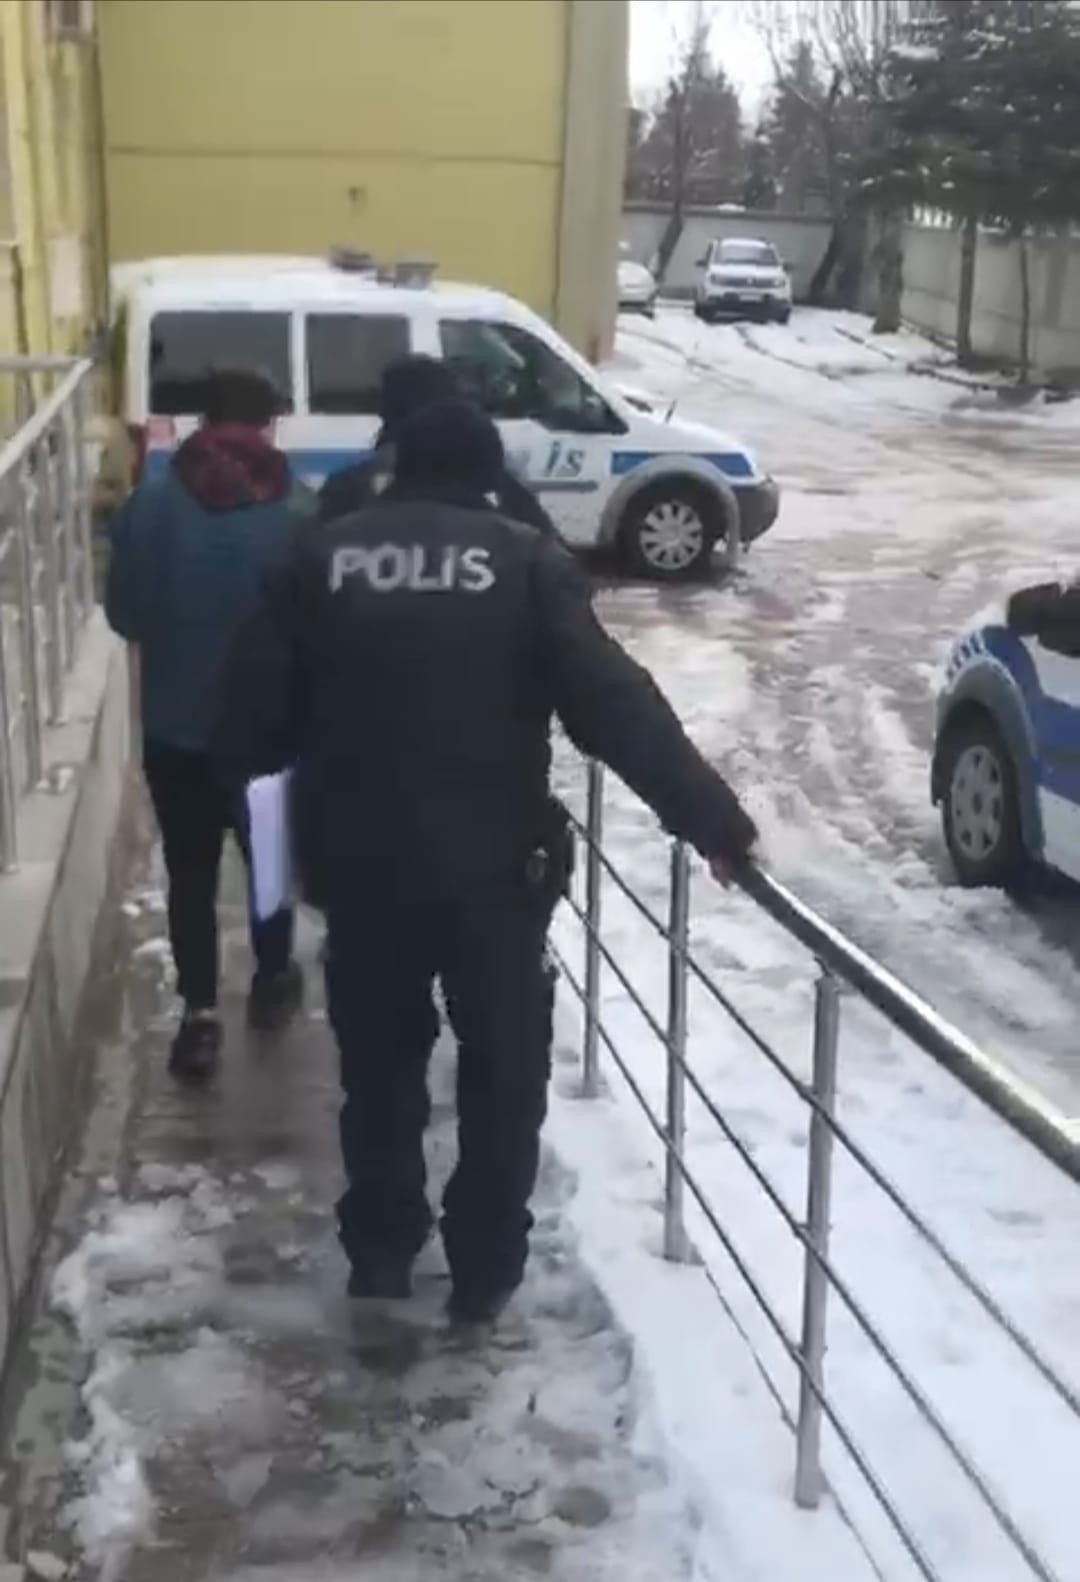 Konya’da çok sayıda suça karışan hırsız yakalandı #konya